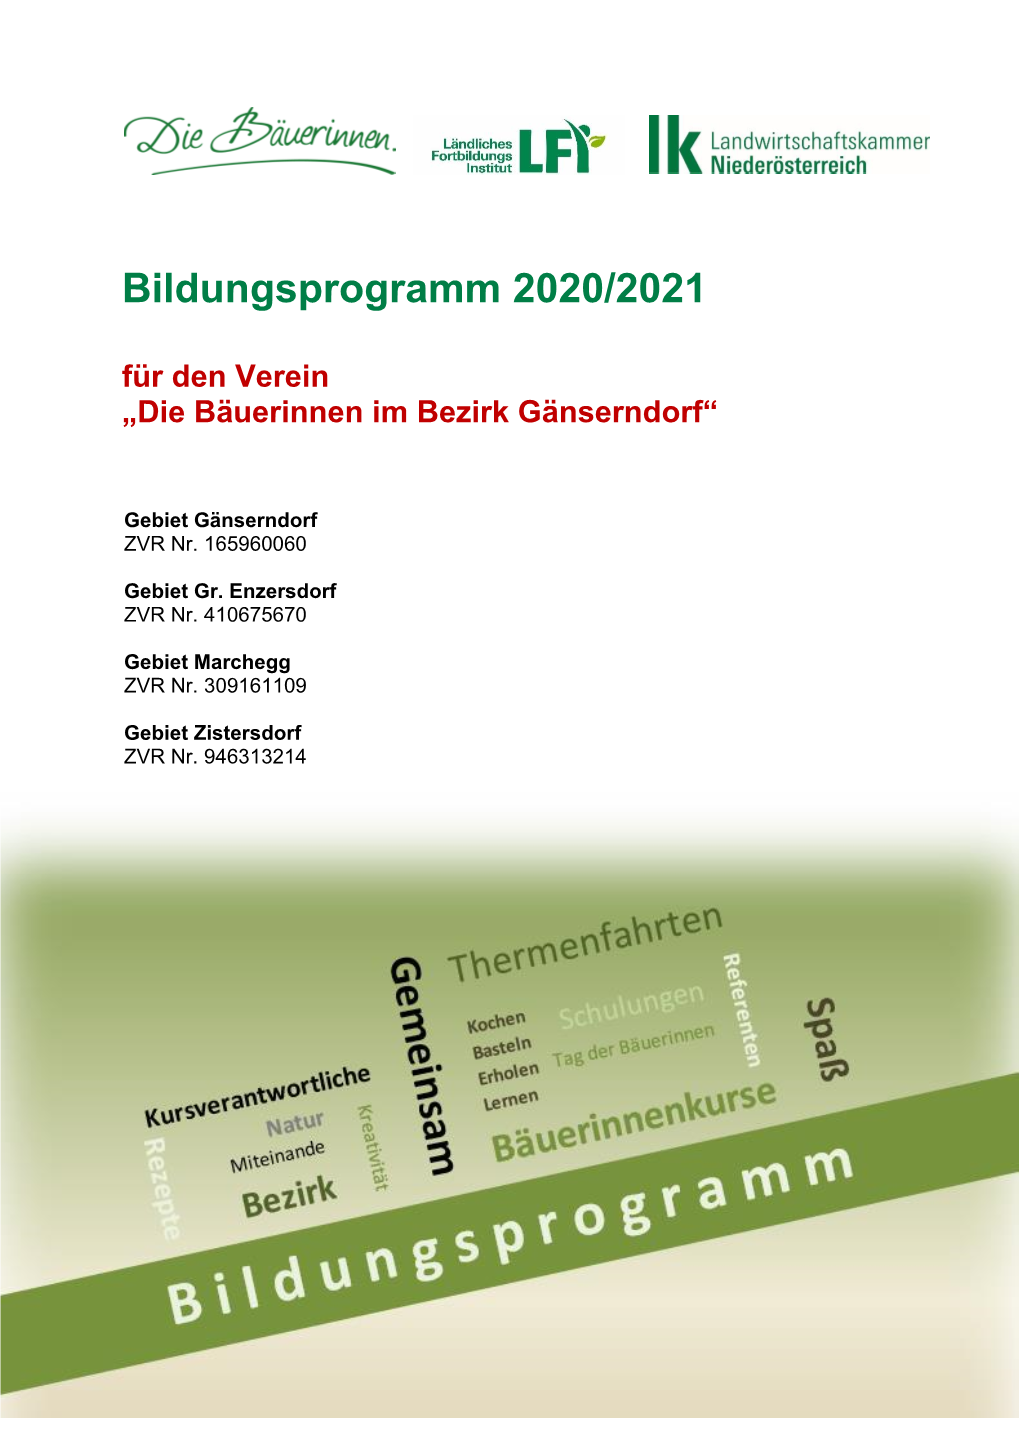 Bildungsprogramm 2020 21 Bezirk Gänserndorf